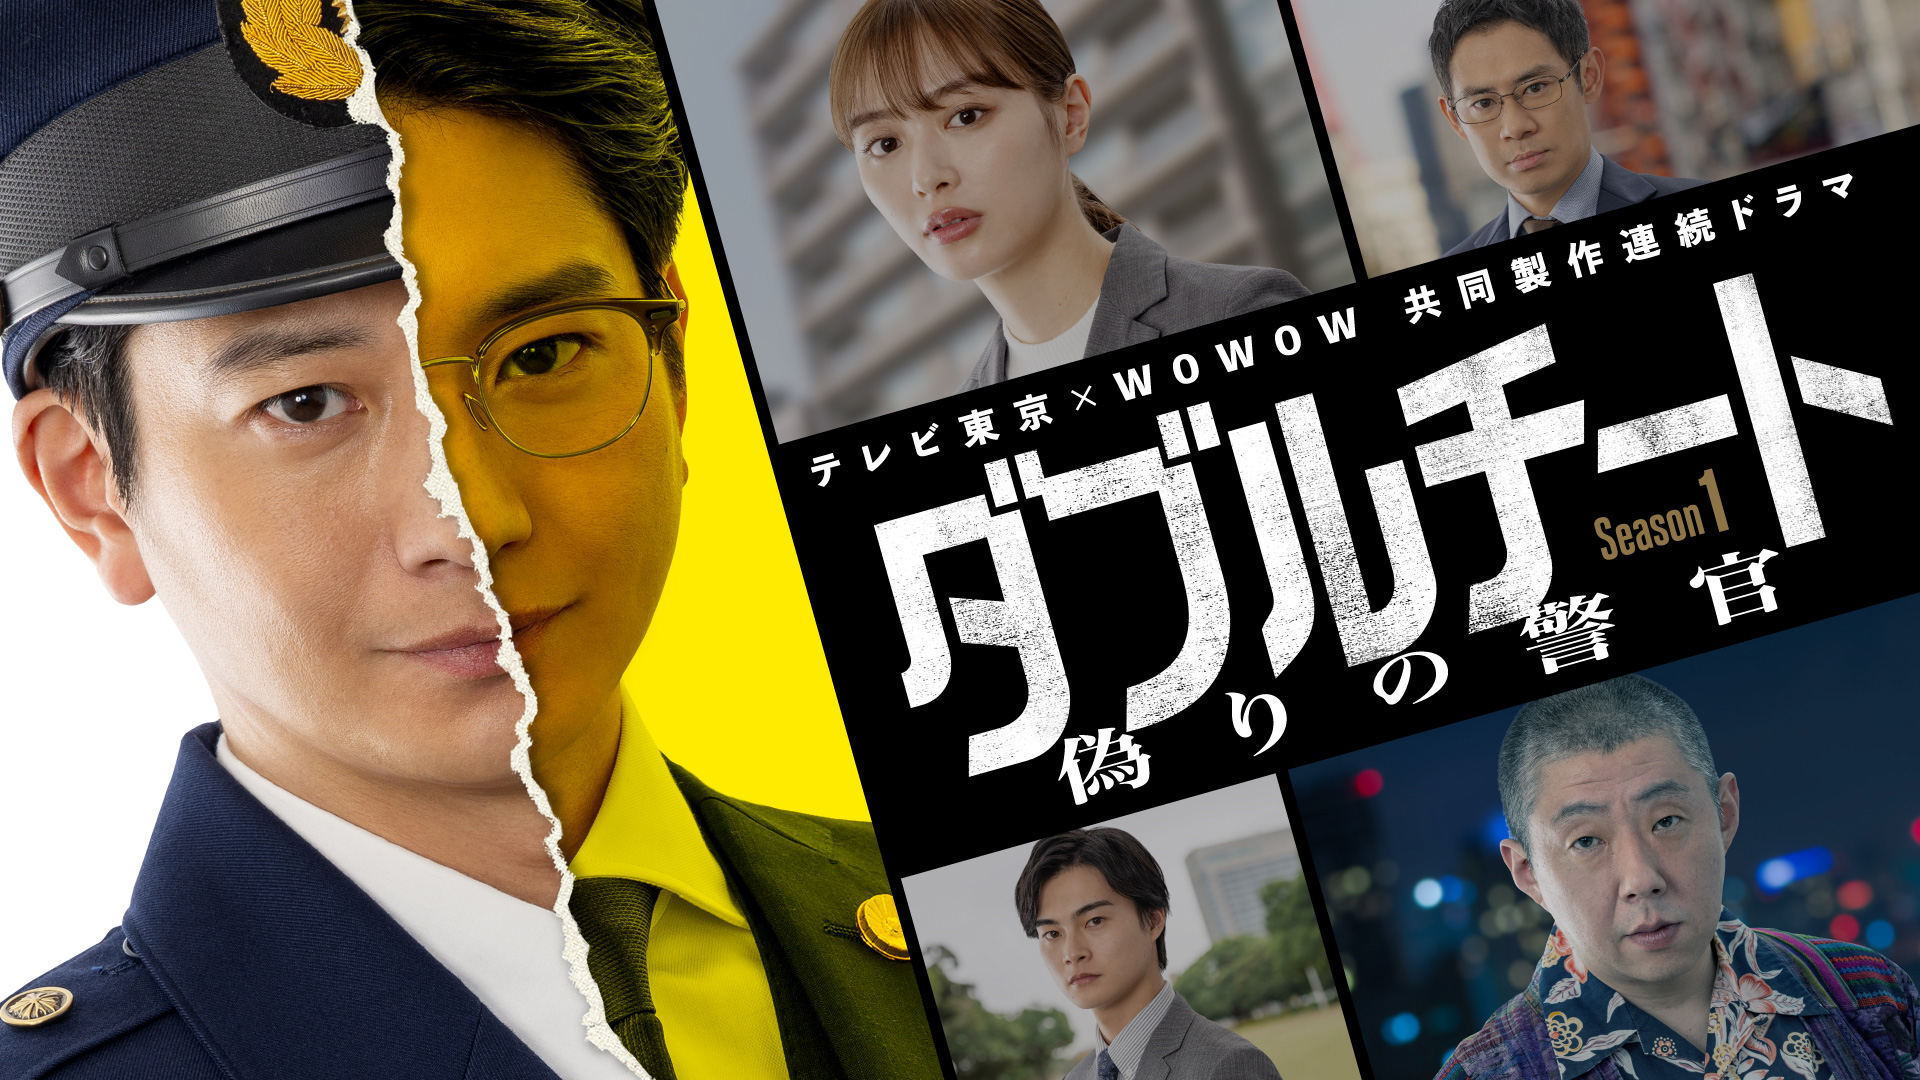 無料テレビで「ダブルチート 偽りの警官 Season１」テレビ東京×WOWOW共同製作連続ドラマを視聴する